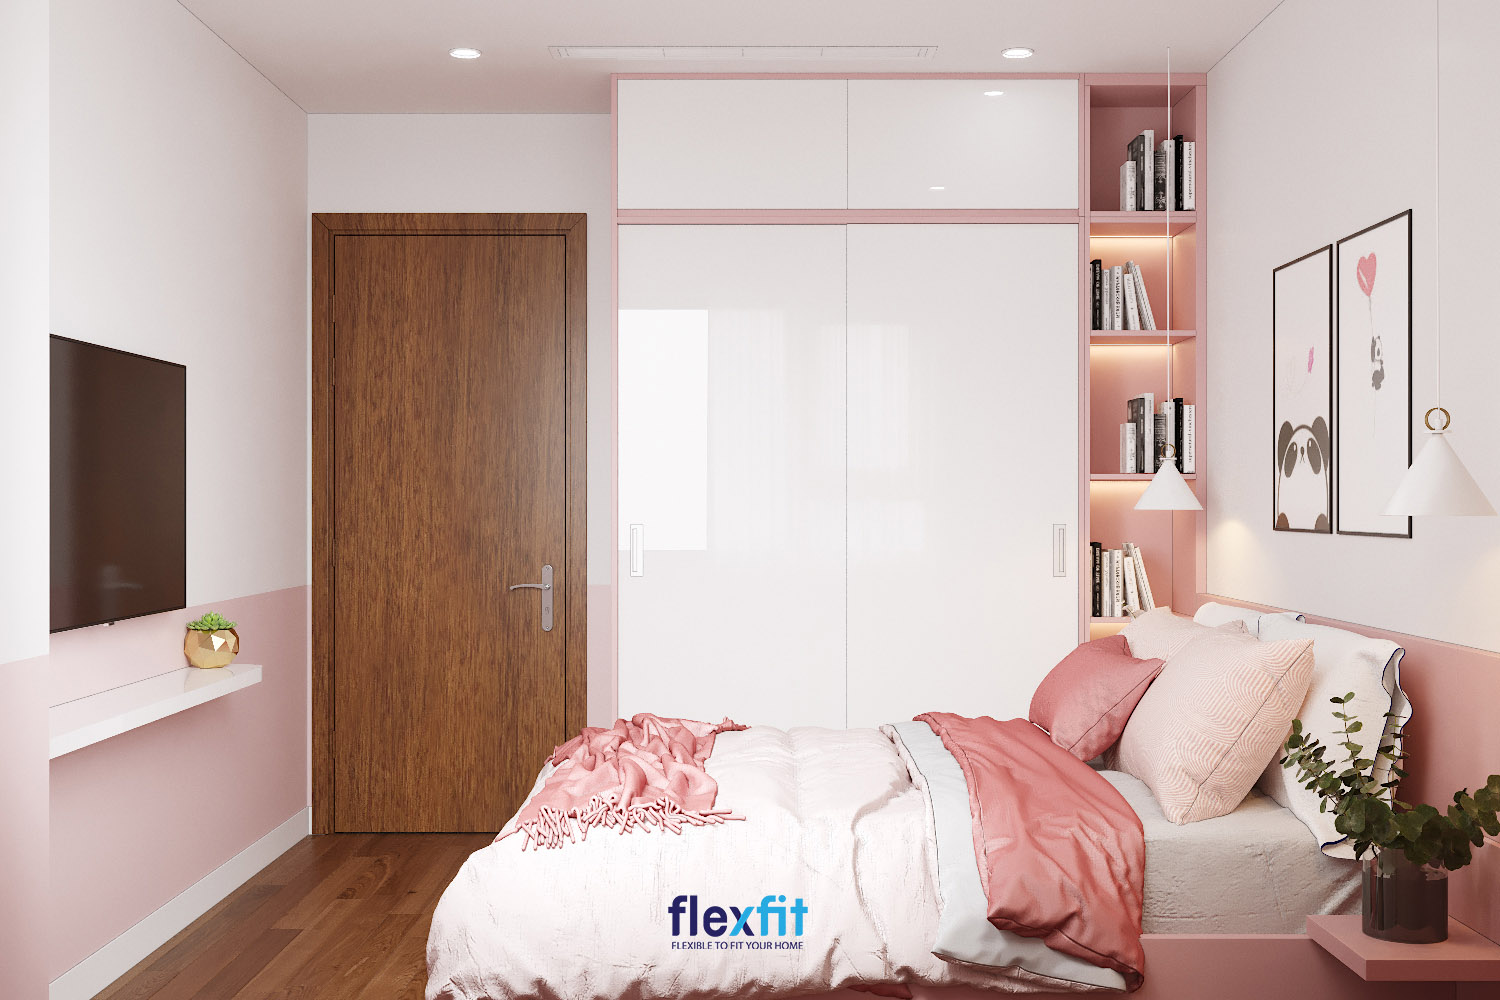 Tủ quần áo 2m Acrylic màu trắng kết hợp hồng pastel sáng bóng hài hòa với màu căn phòng, mang lại vẻ đẹp đầy nữ tính. Tủ được kết hợp với kệ trang trí giúp bạn có thể bày trí sách hoặc các đồ vật lưu niệm tùy theo sở thích.